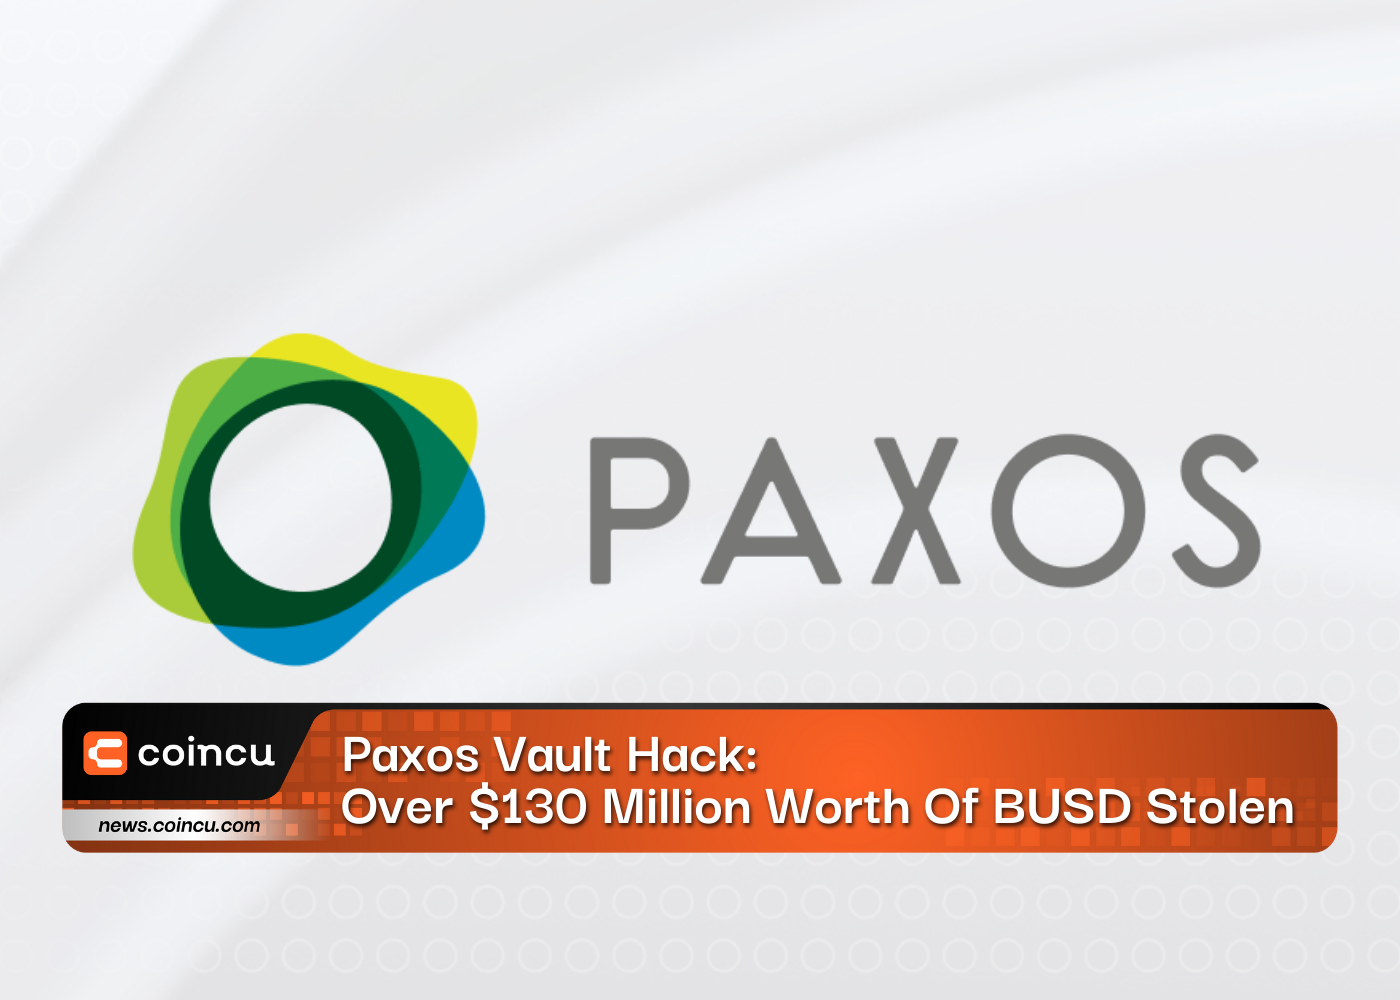 Paxos Vault Hack